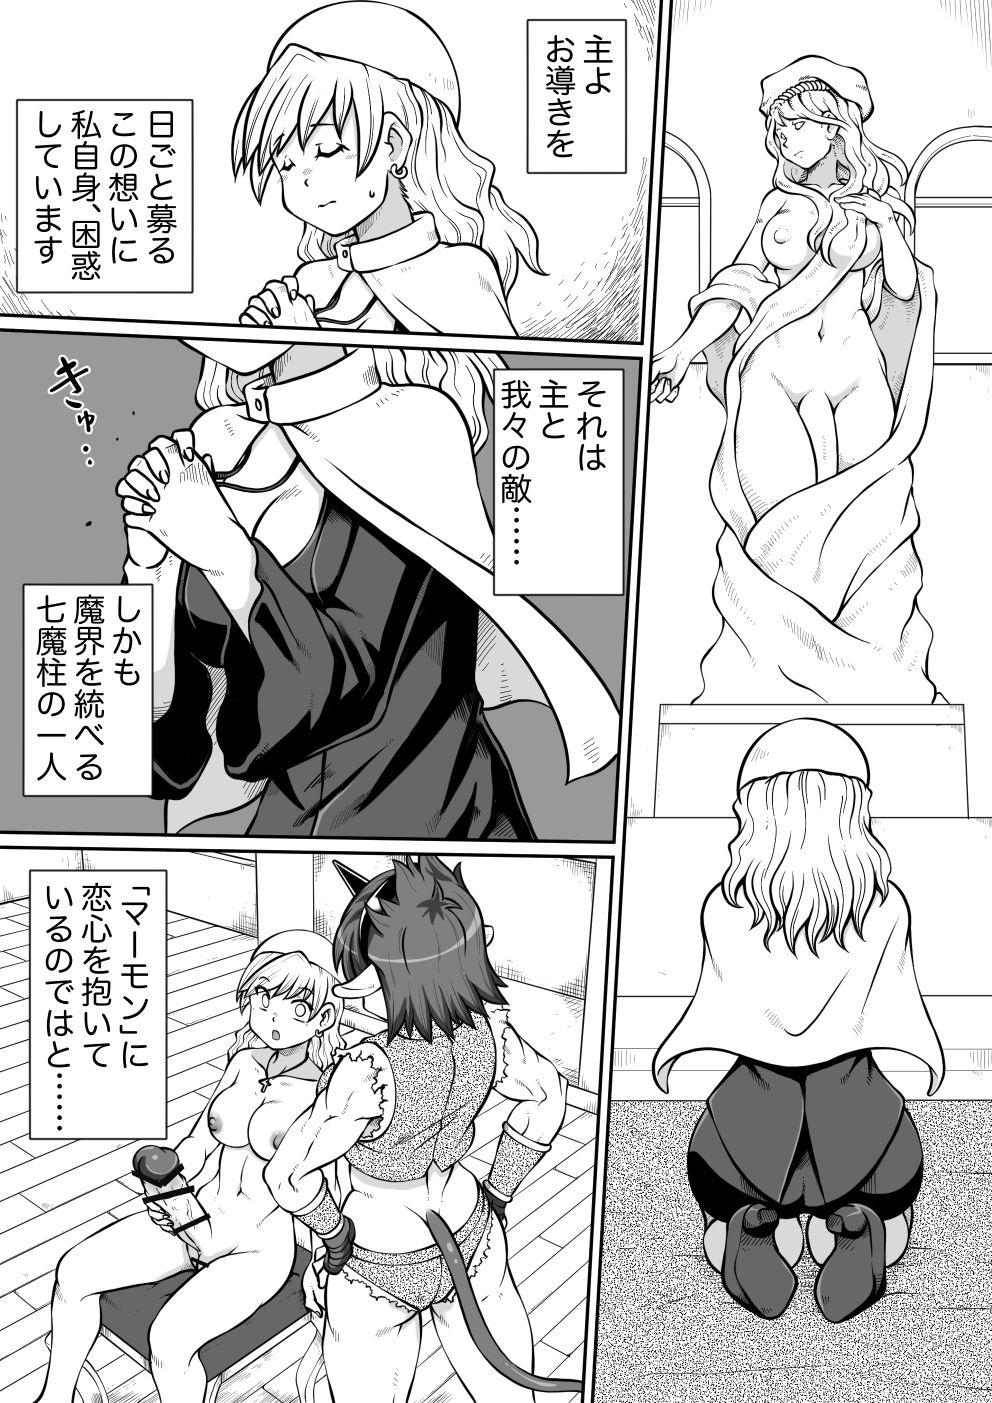 Safadinha Ma no Akumabarai 2 Anime - Page 3